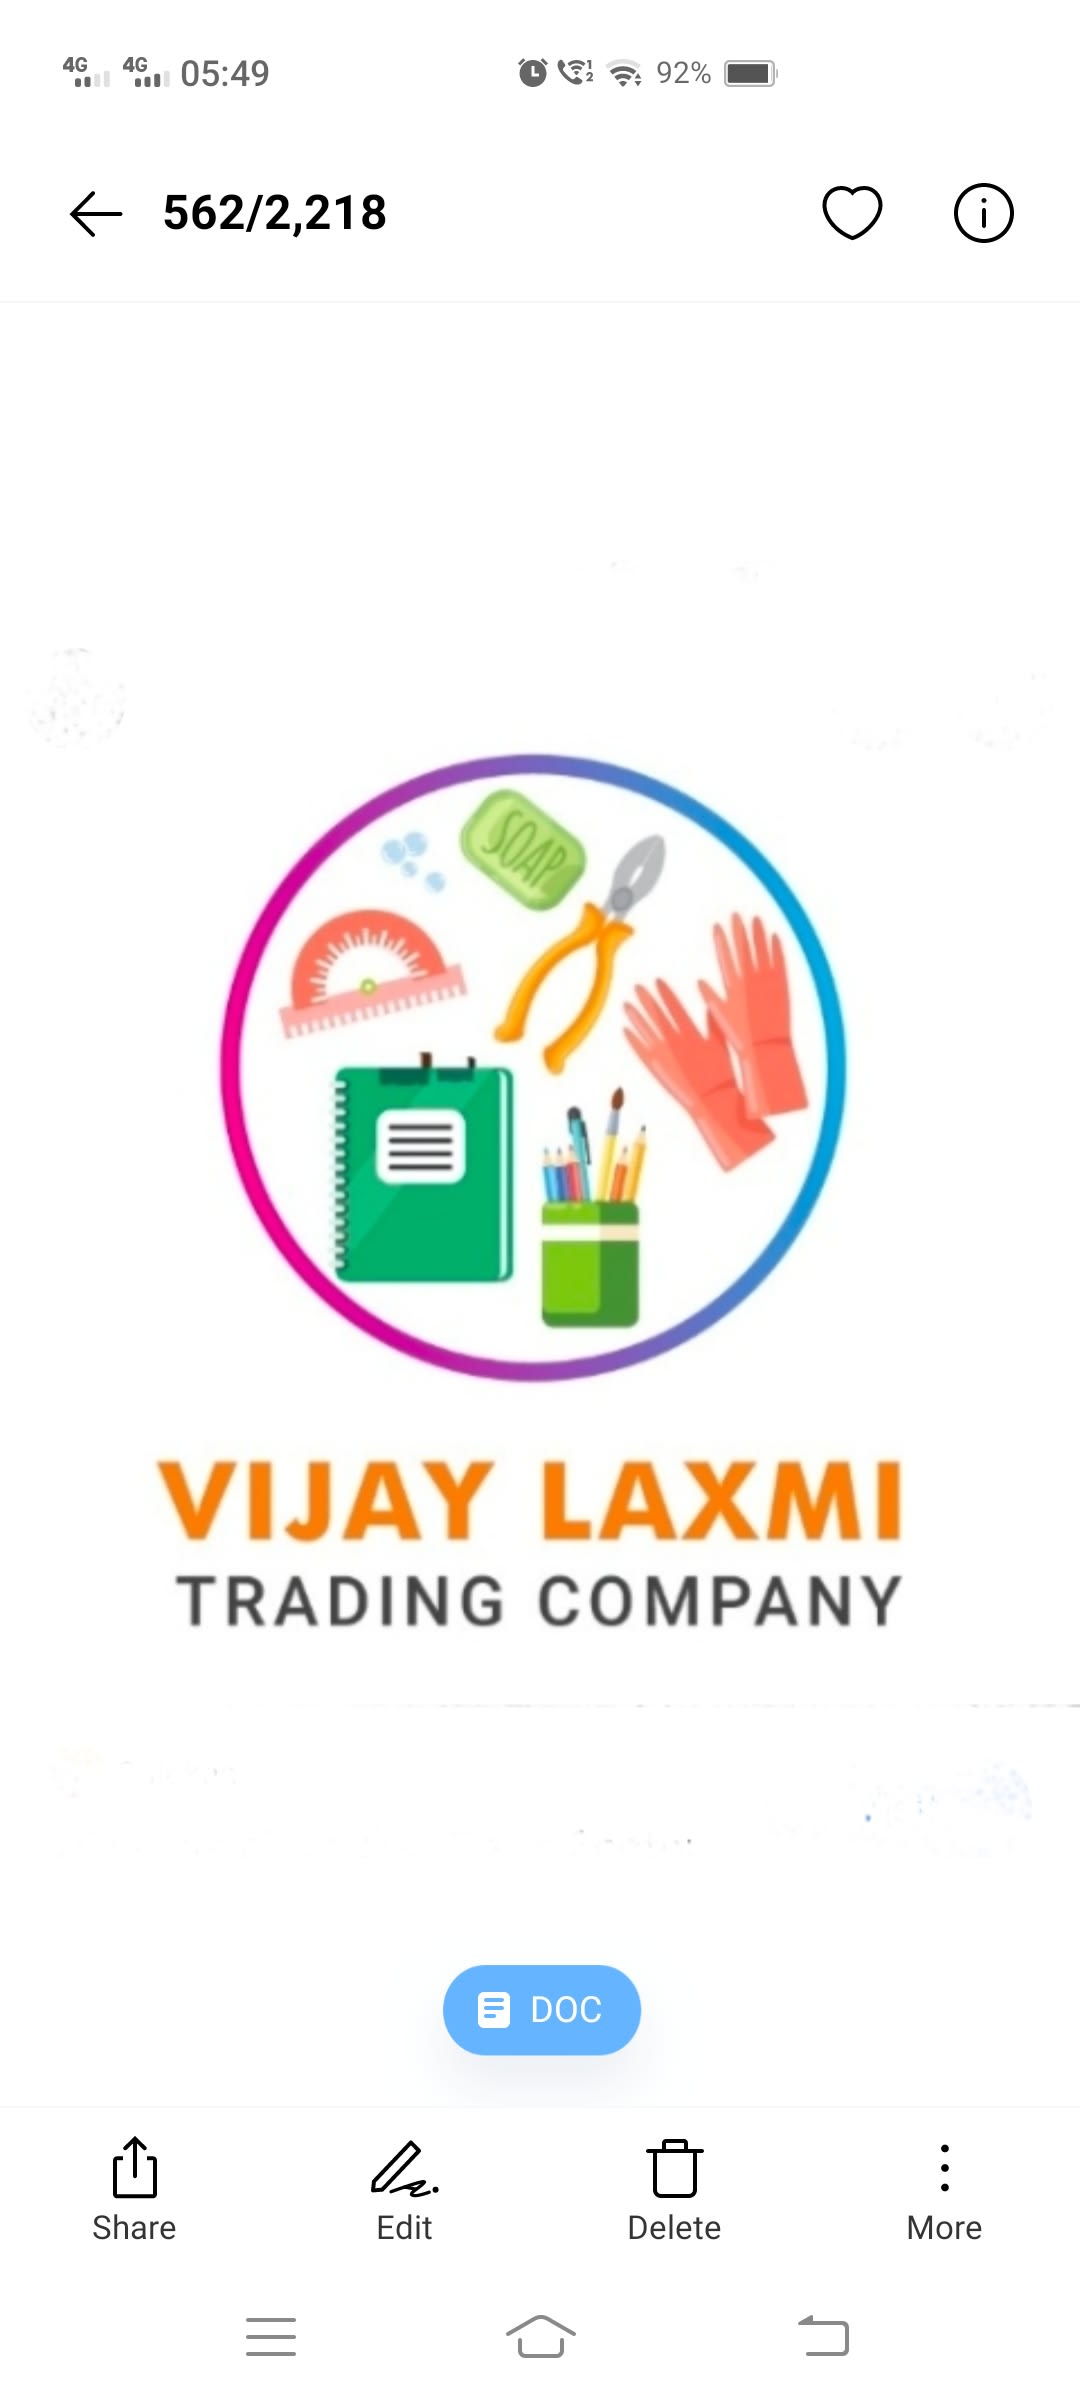 Vijay Laxmi Trading Company